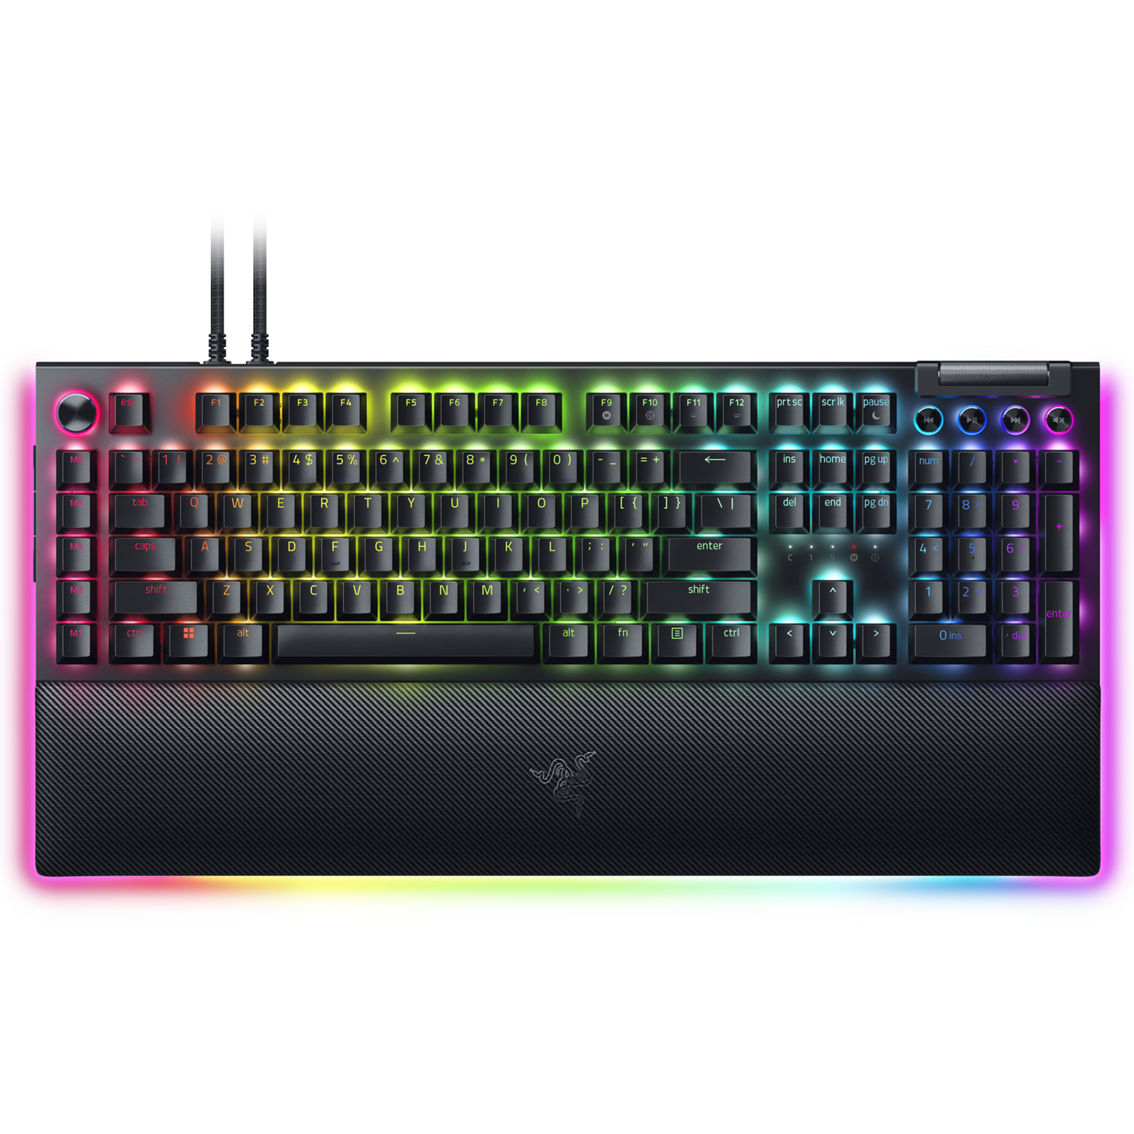 Razer BlackWidow V4 Pro Mechanical Gaming Keyboard with Razer Chroma RGB